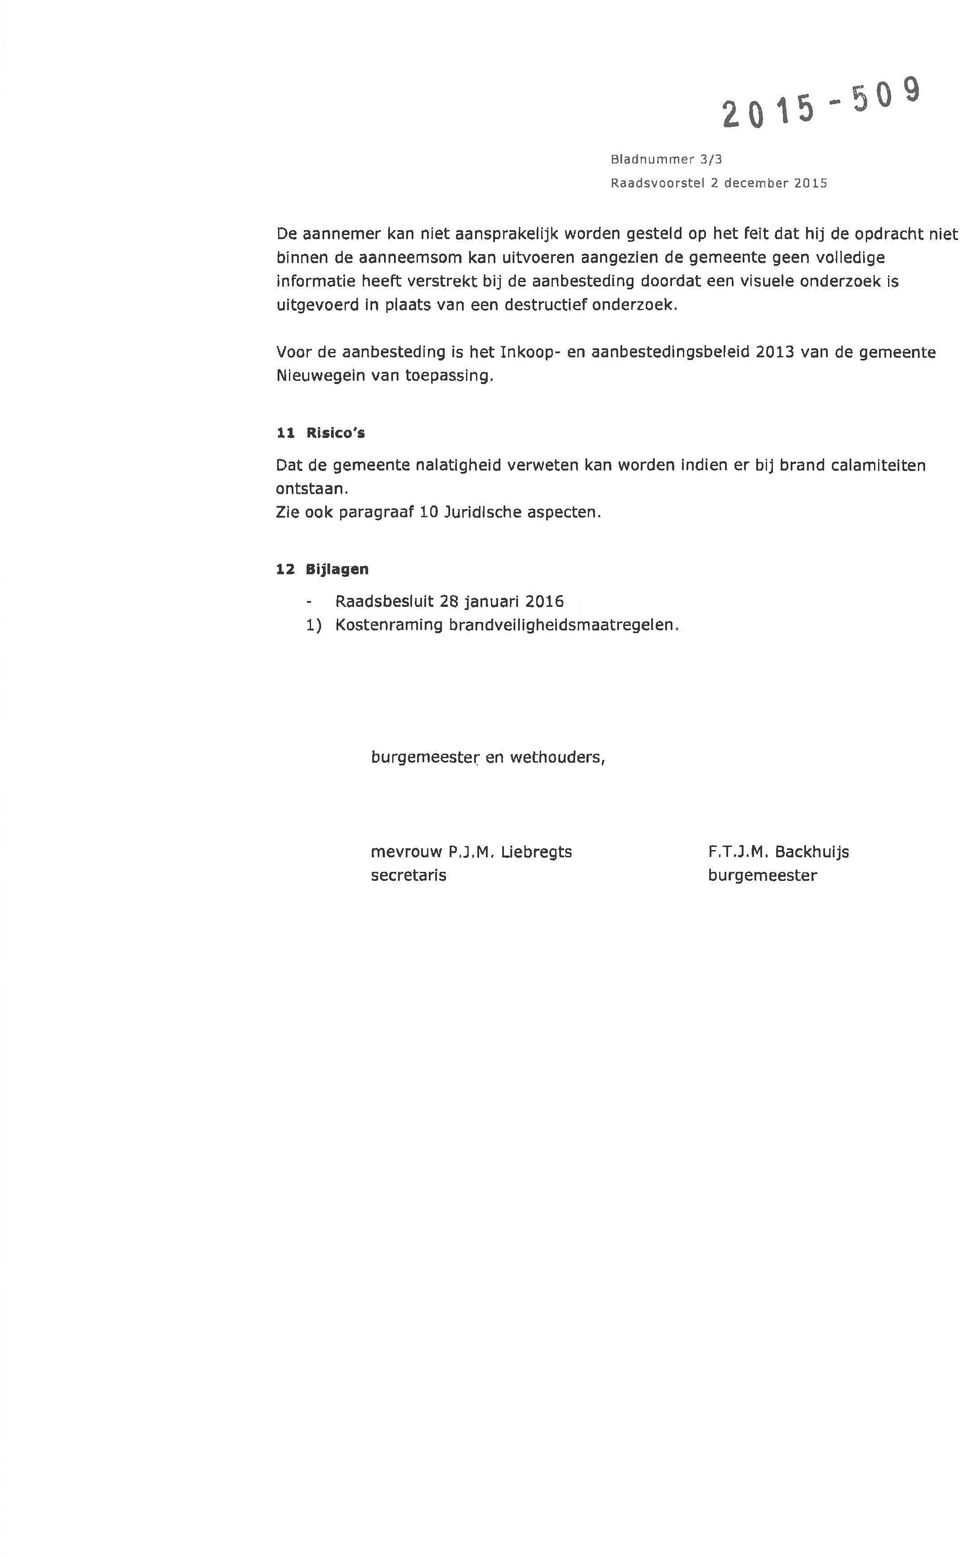 Voor de aanbesteding is het Inkoop- en aanbestedingsbeleid 2013 van de gemeente Nieuwegein van toepassing.